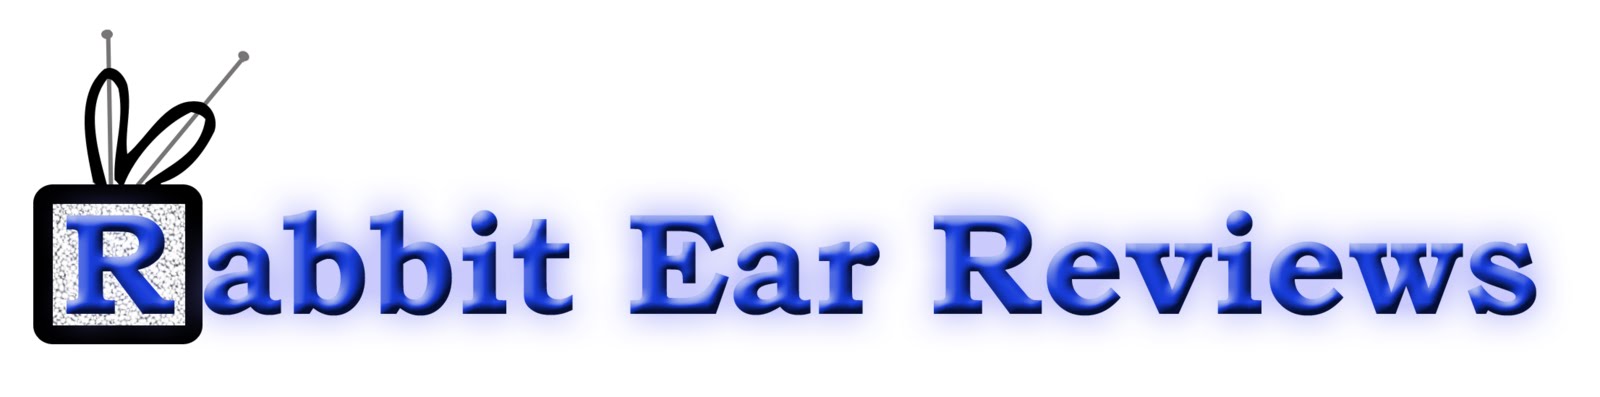 Rabbit Ear Reviews: May 2013